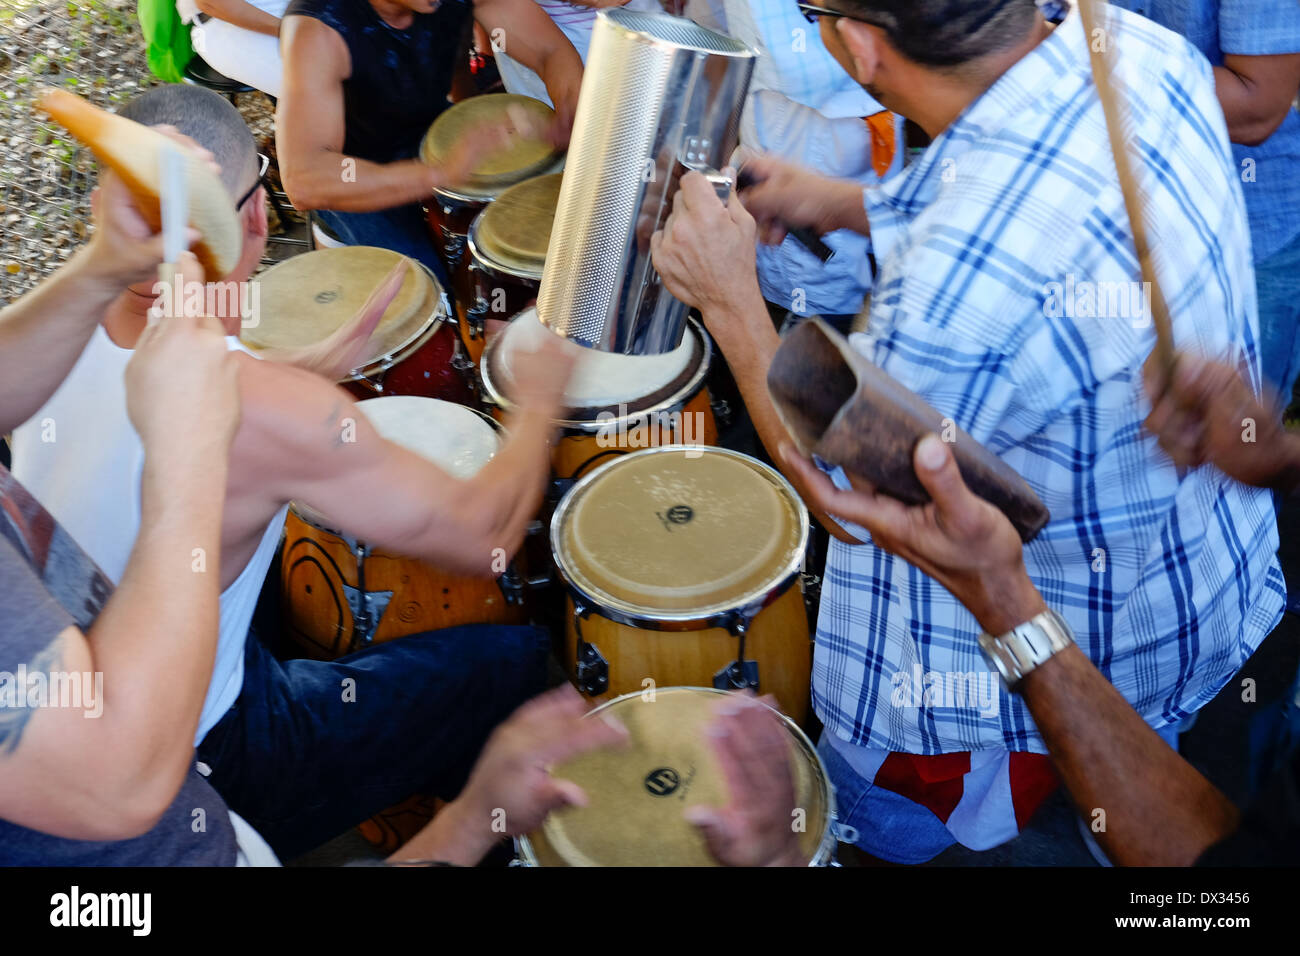 MIAMI - 9. März 2014: Band spielt Musik in den Straßen Calle 8 während des 37. Calle Ocho Festivals, ein jährliches Ereignis, dass erfolgt über acht Straße in Little Havana mit viel Musik, Essen, und es ist die größte Party der Stadt, die hispanic Erbe feiert. Stockfoto